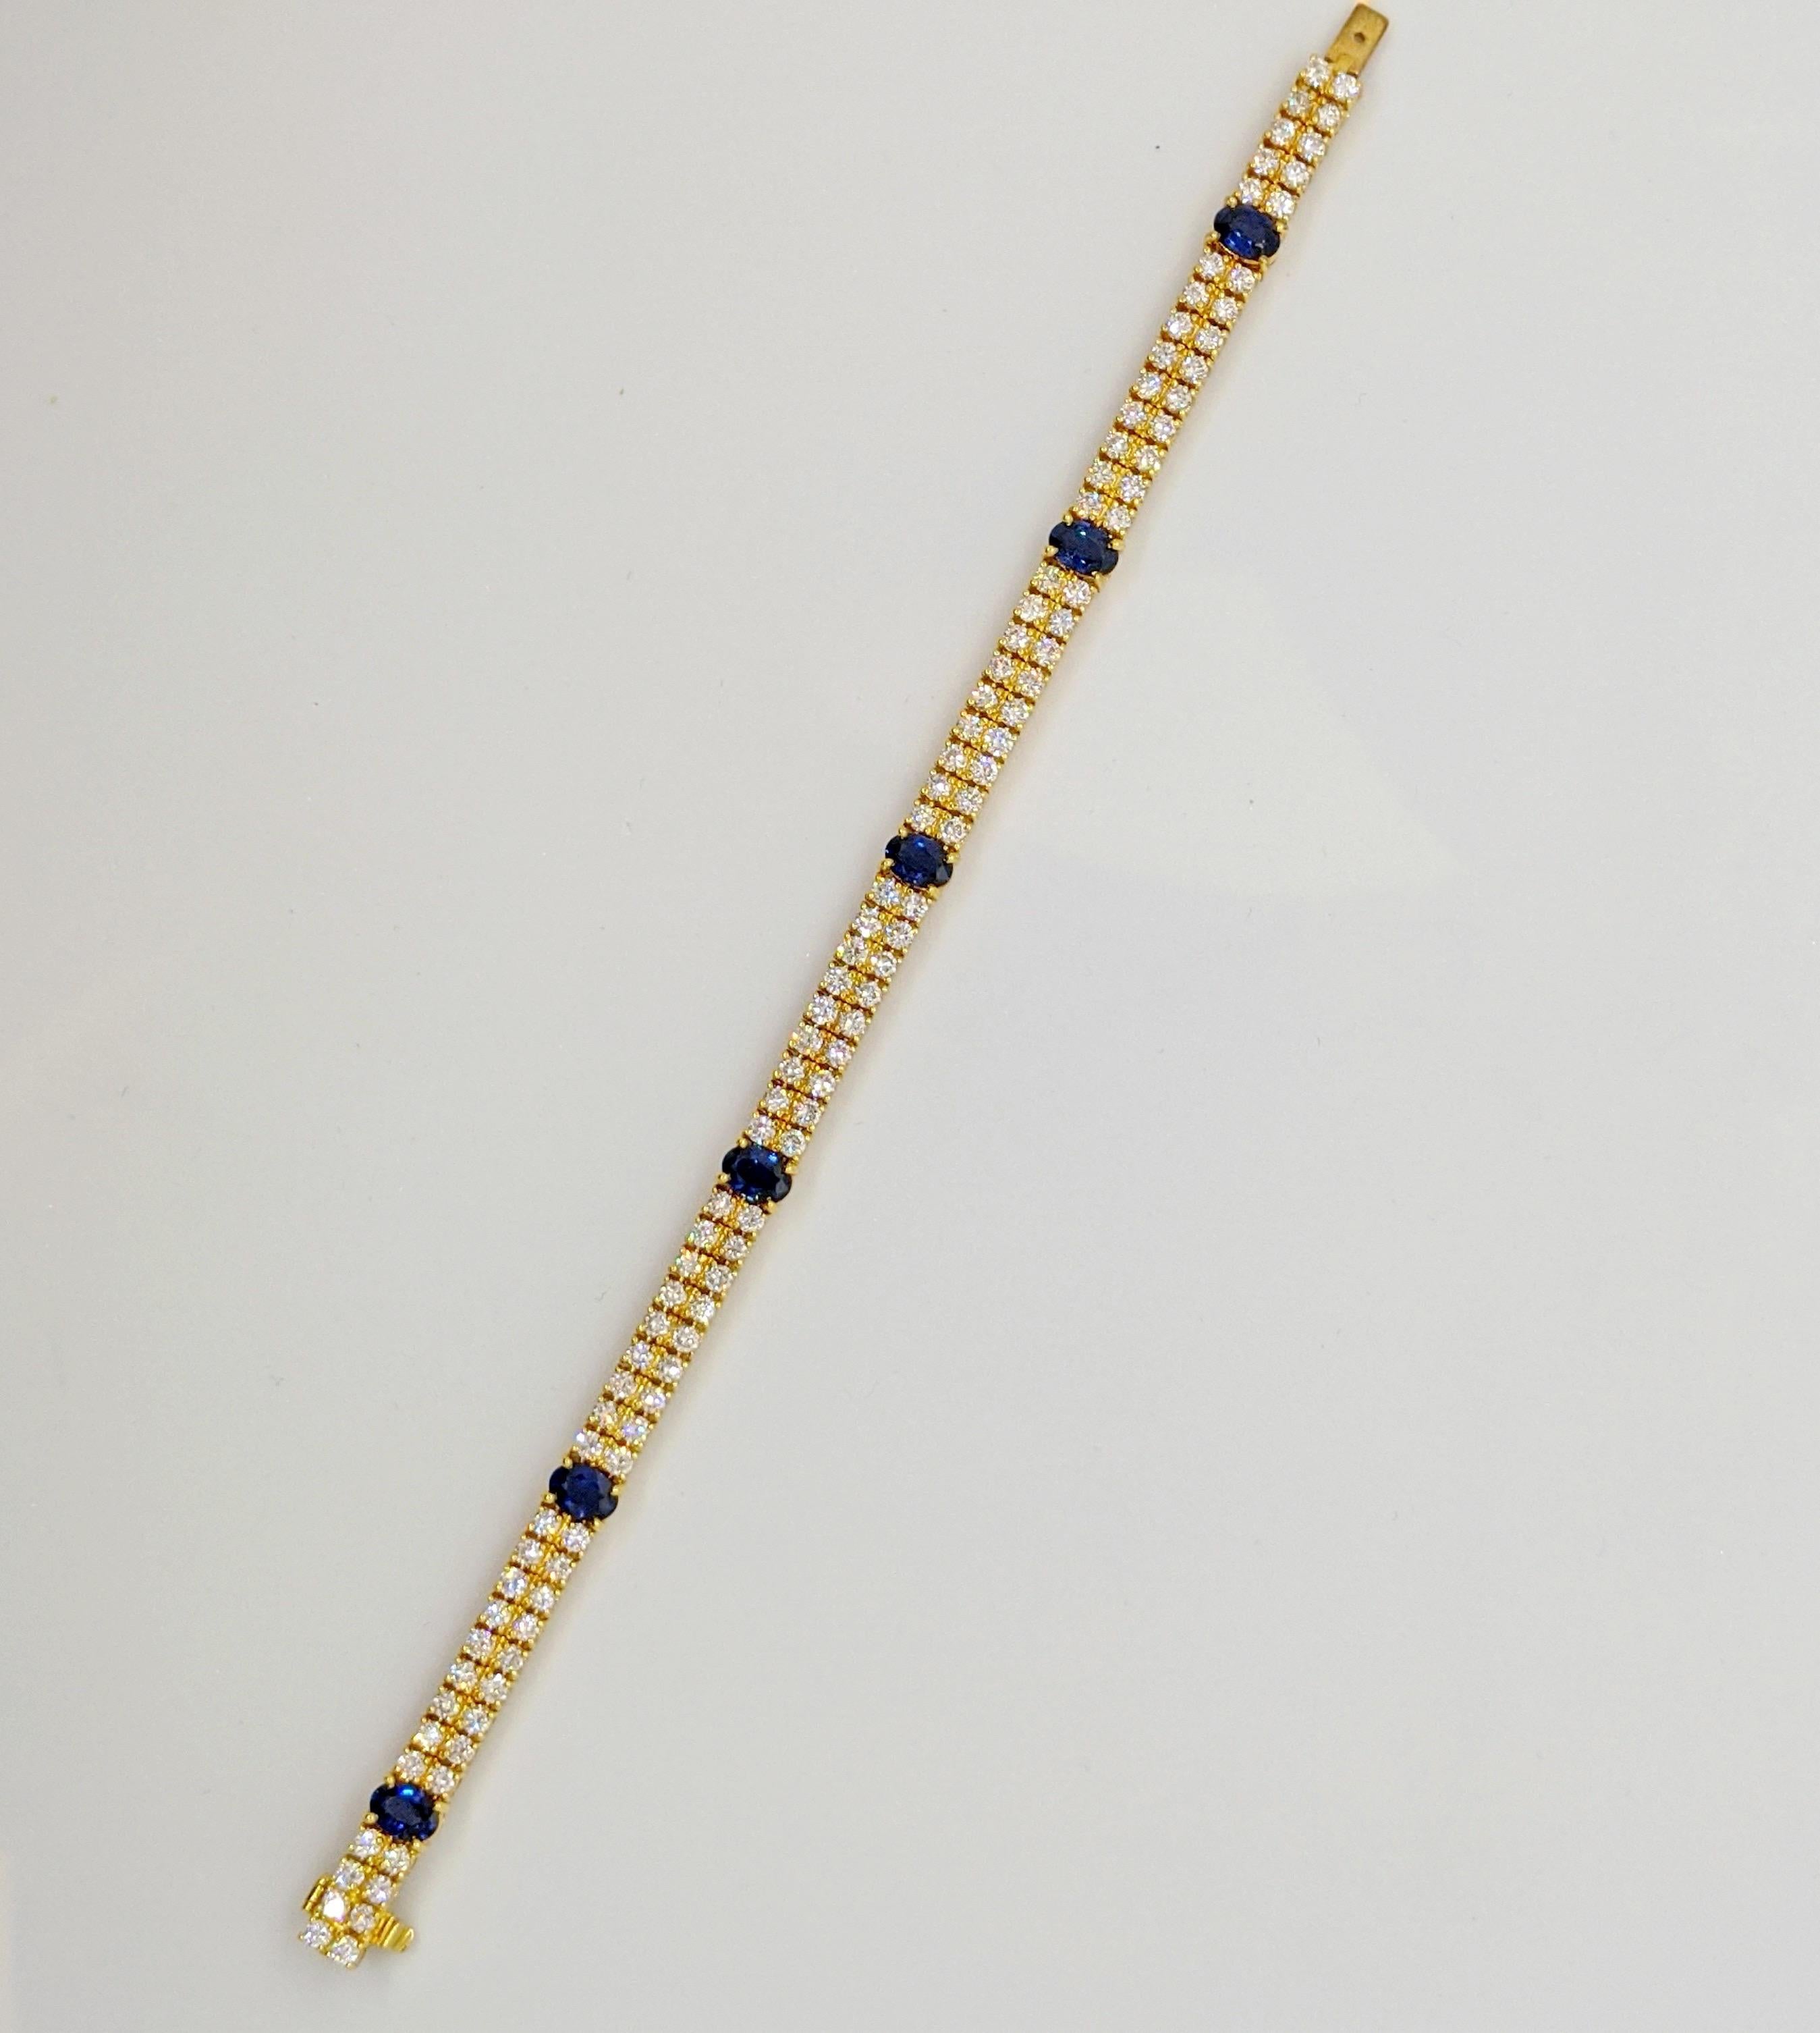 Dies ist ein schönes klassisches Diamant- und Saphirarmband. Das in 18 Karat Gelbgold gefasste Armband ist mit 2 Reihen runder Brillanten besetzt. Es gibt 6 ovale blaue Saphire, die gleichmäßig verteilt sind. Das Armband misst 7